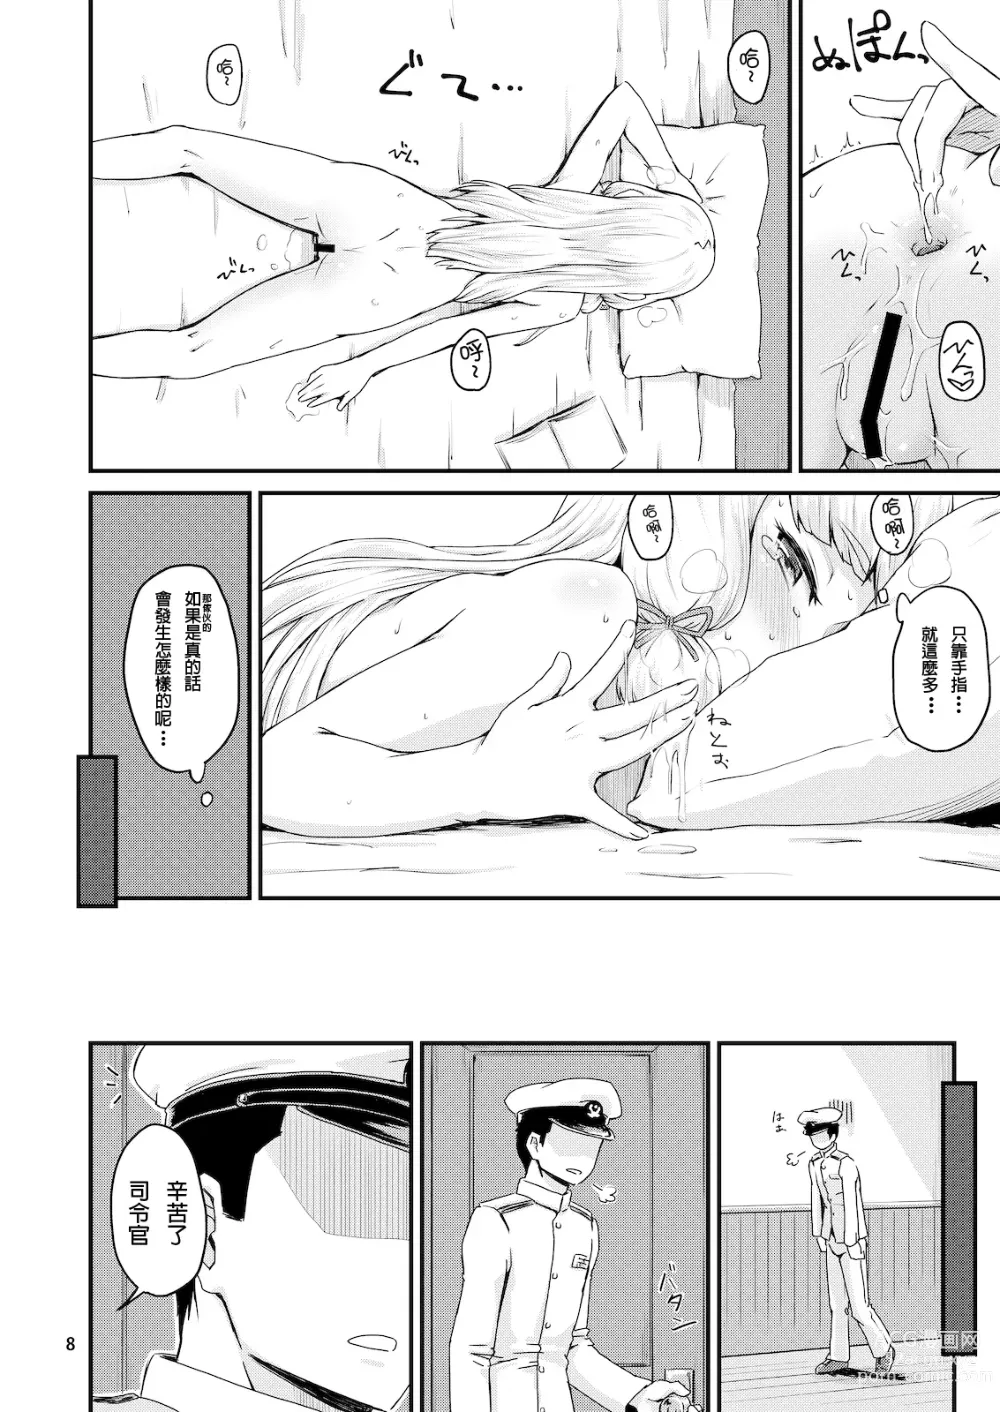 Page 10 of doujinshi Musshu Murakumo!! -Monsieur&Murakumo-